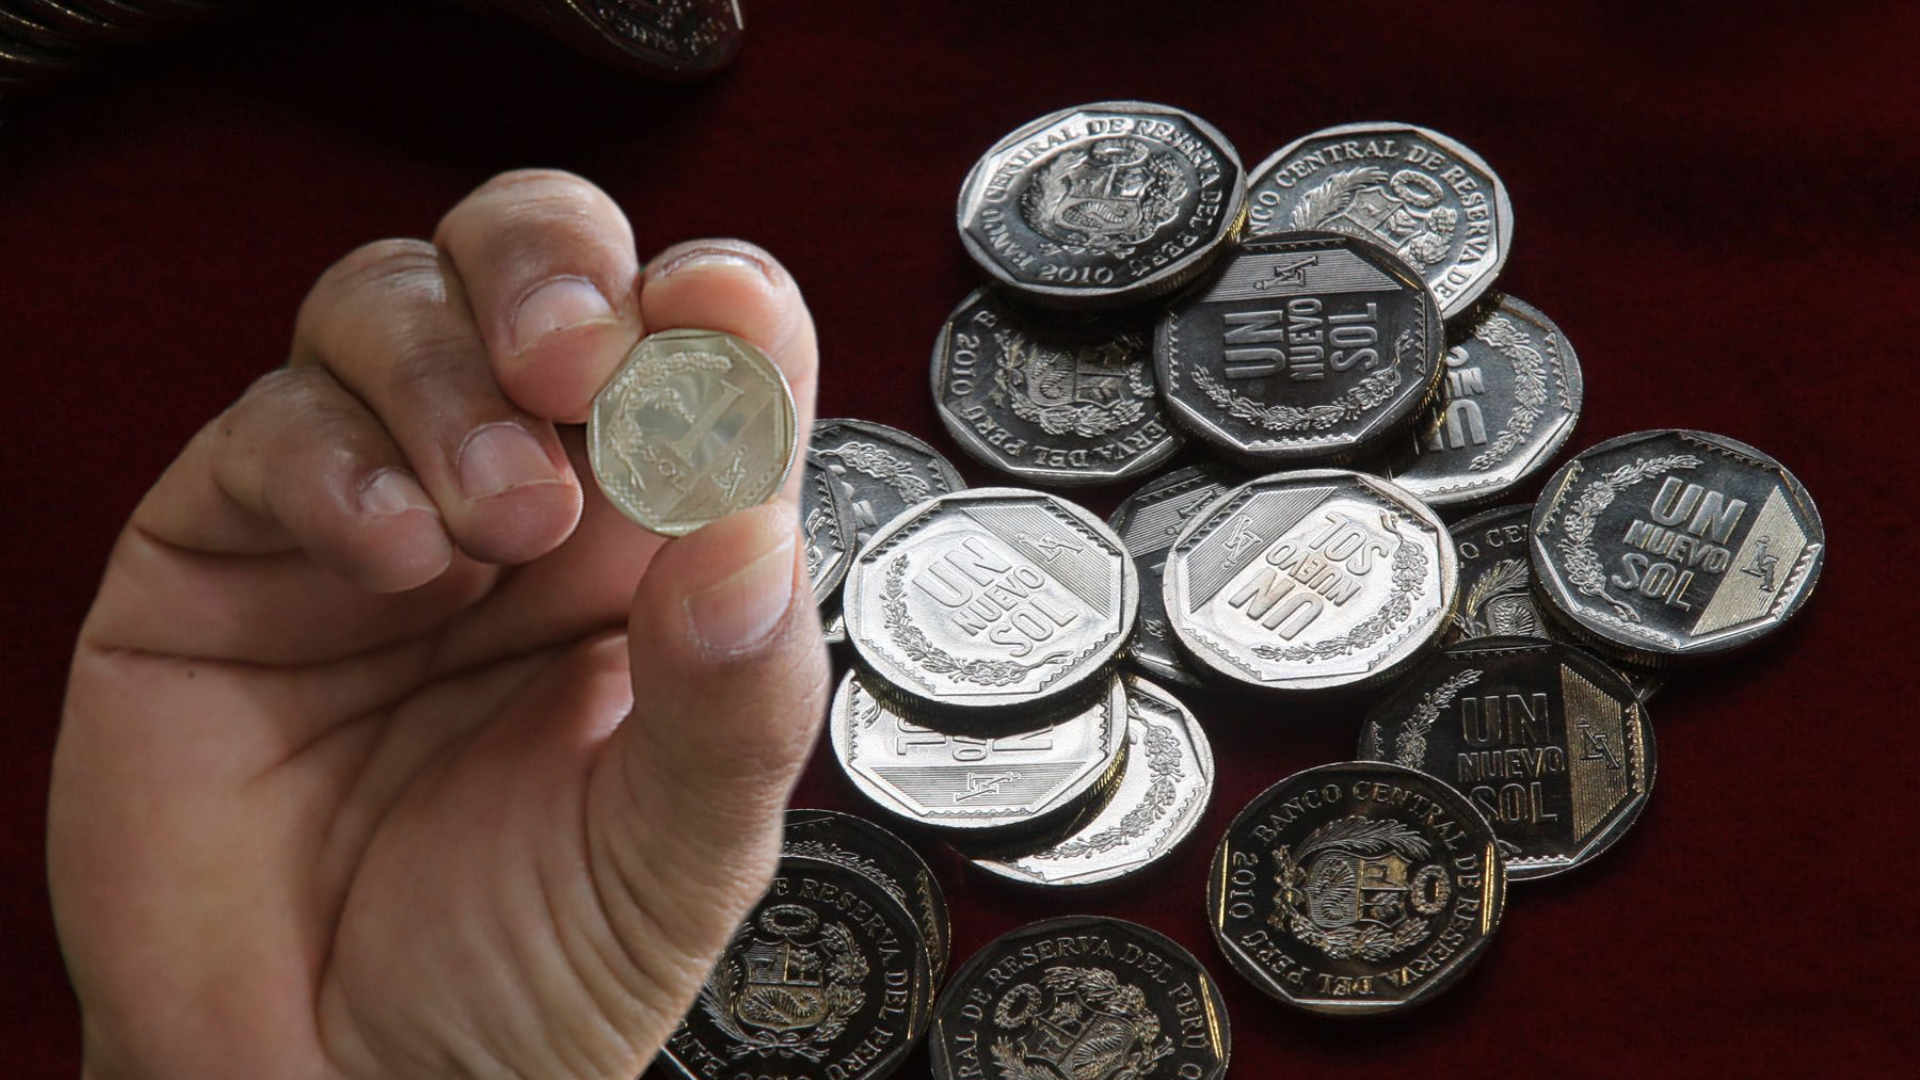 Monedas del Perú: las más caras que vende el BCR y las colecciones que valen la pena tener